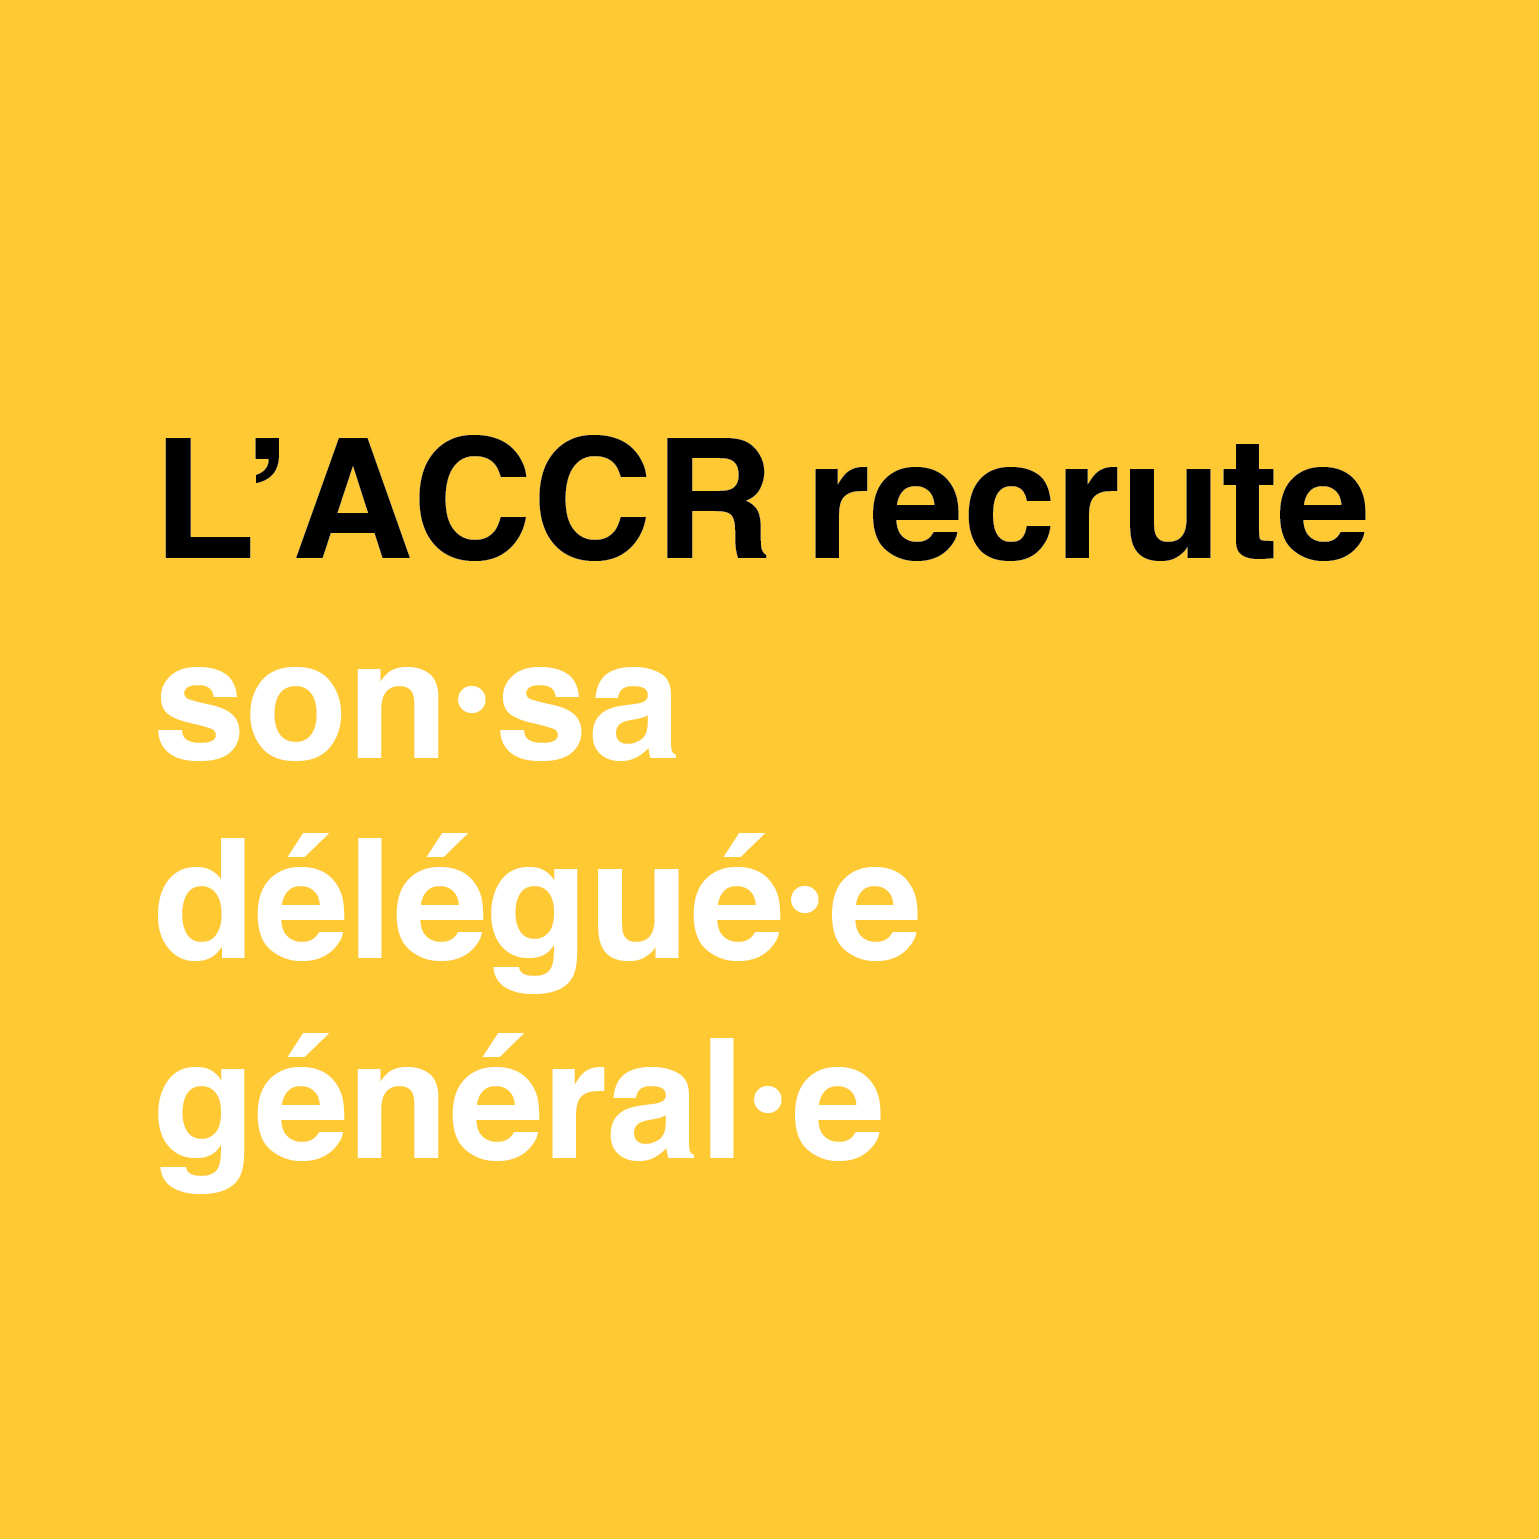 L’ACCR recrute son·sa délégué·e général·e